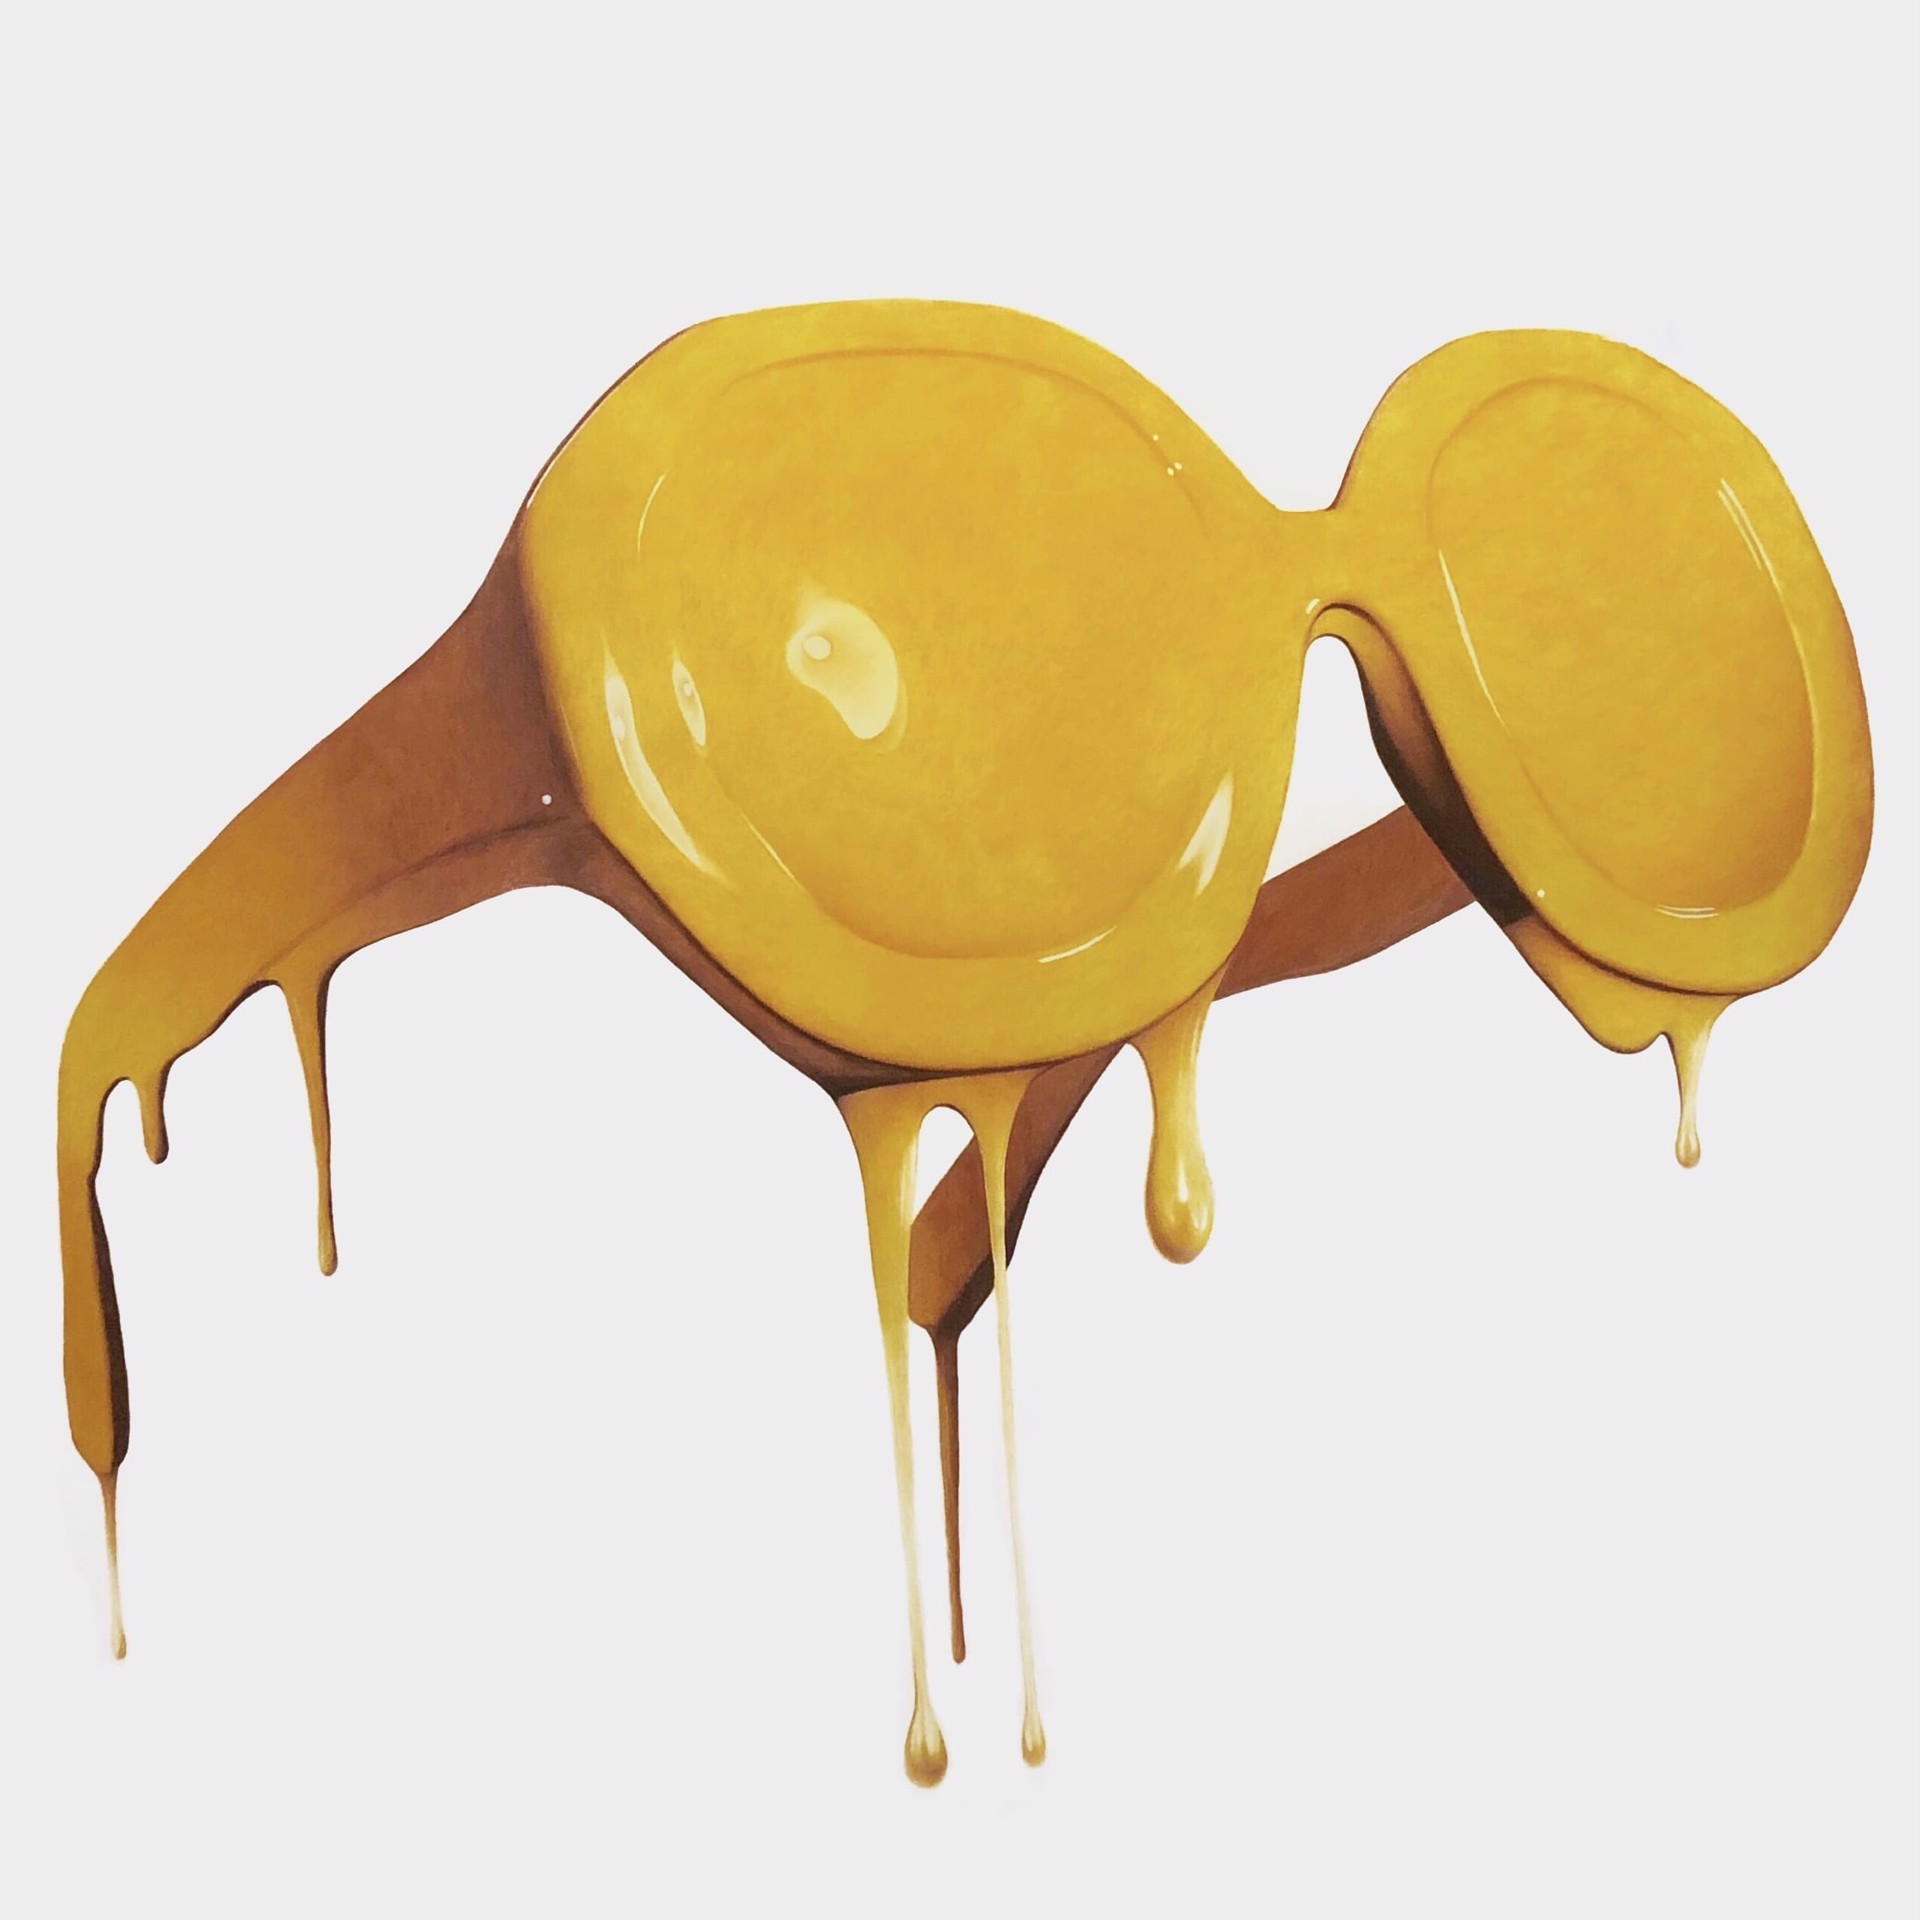 Honey by Guest Artist Crystian Hopper